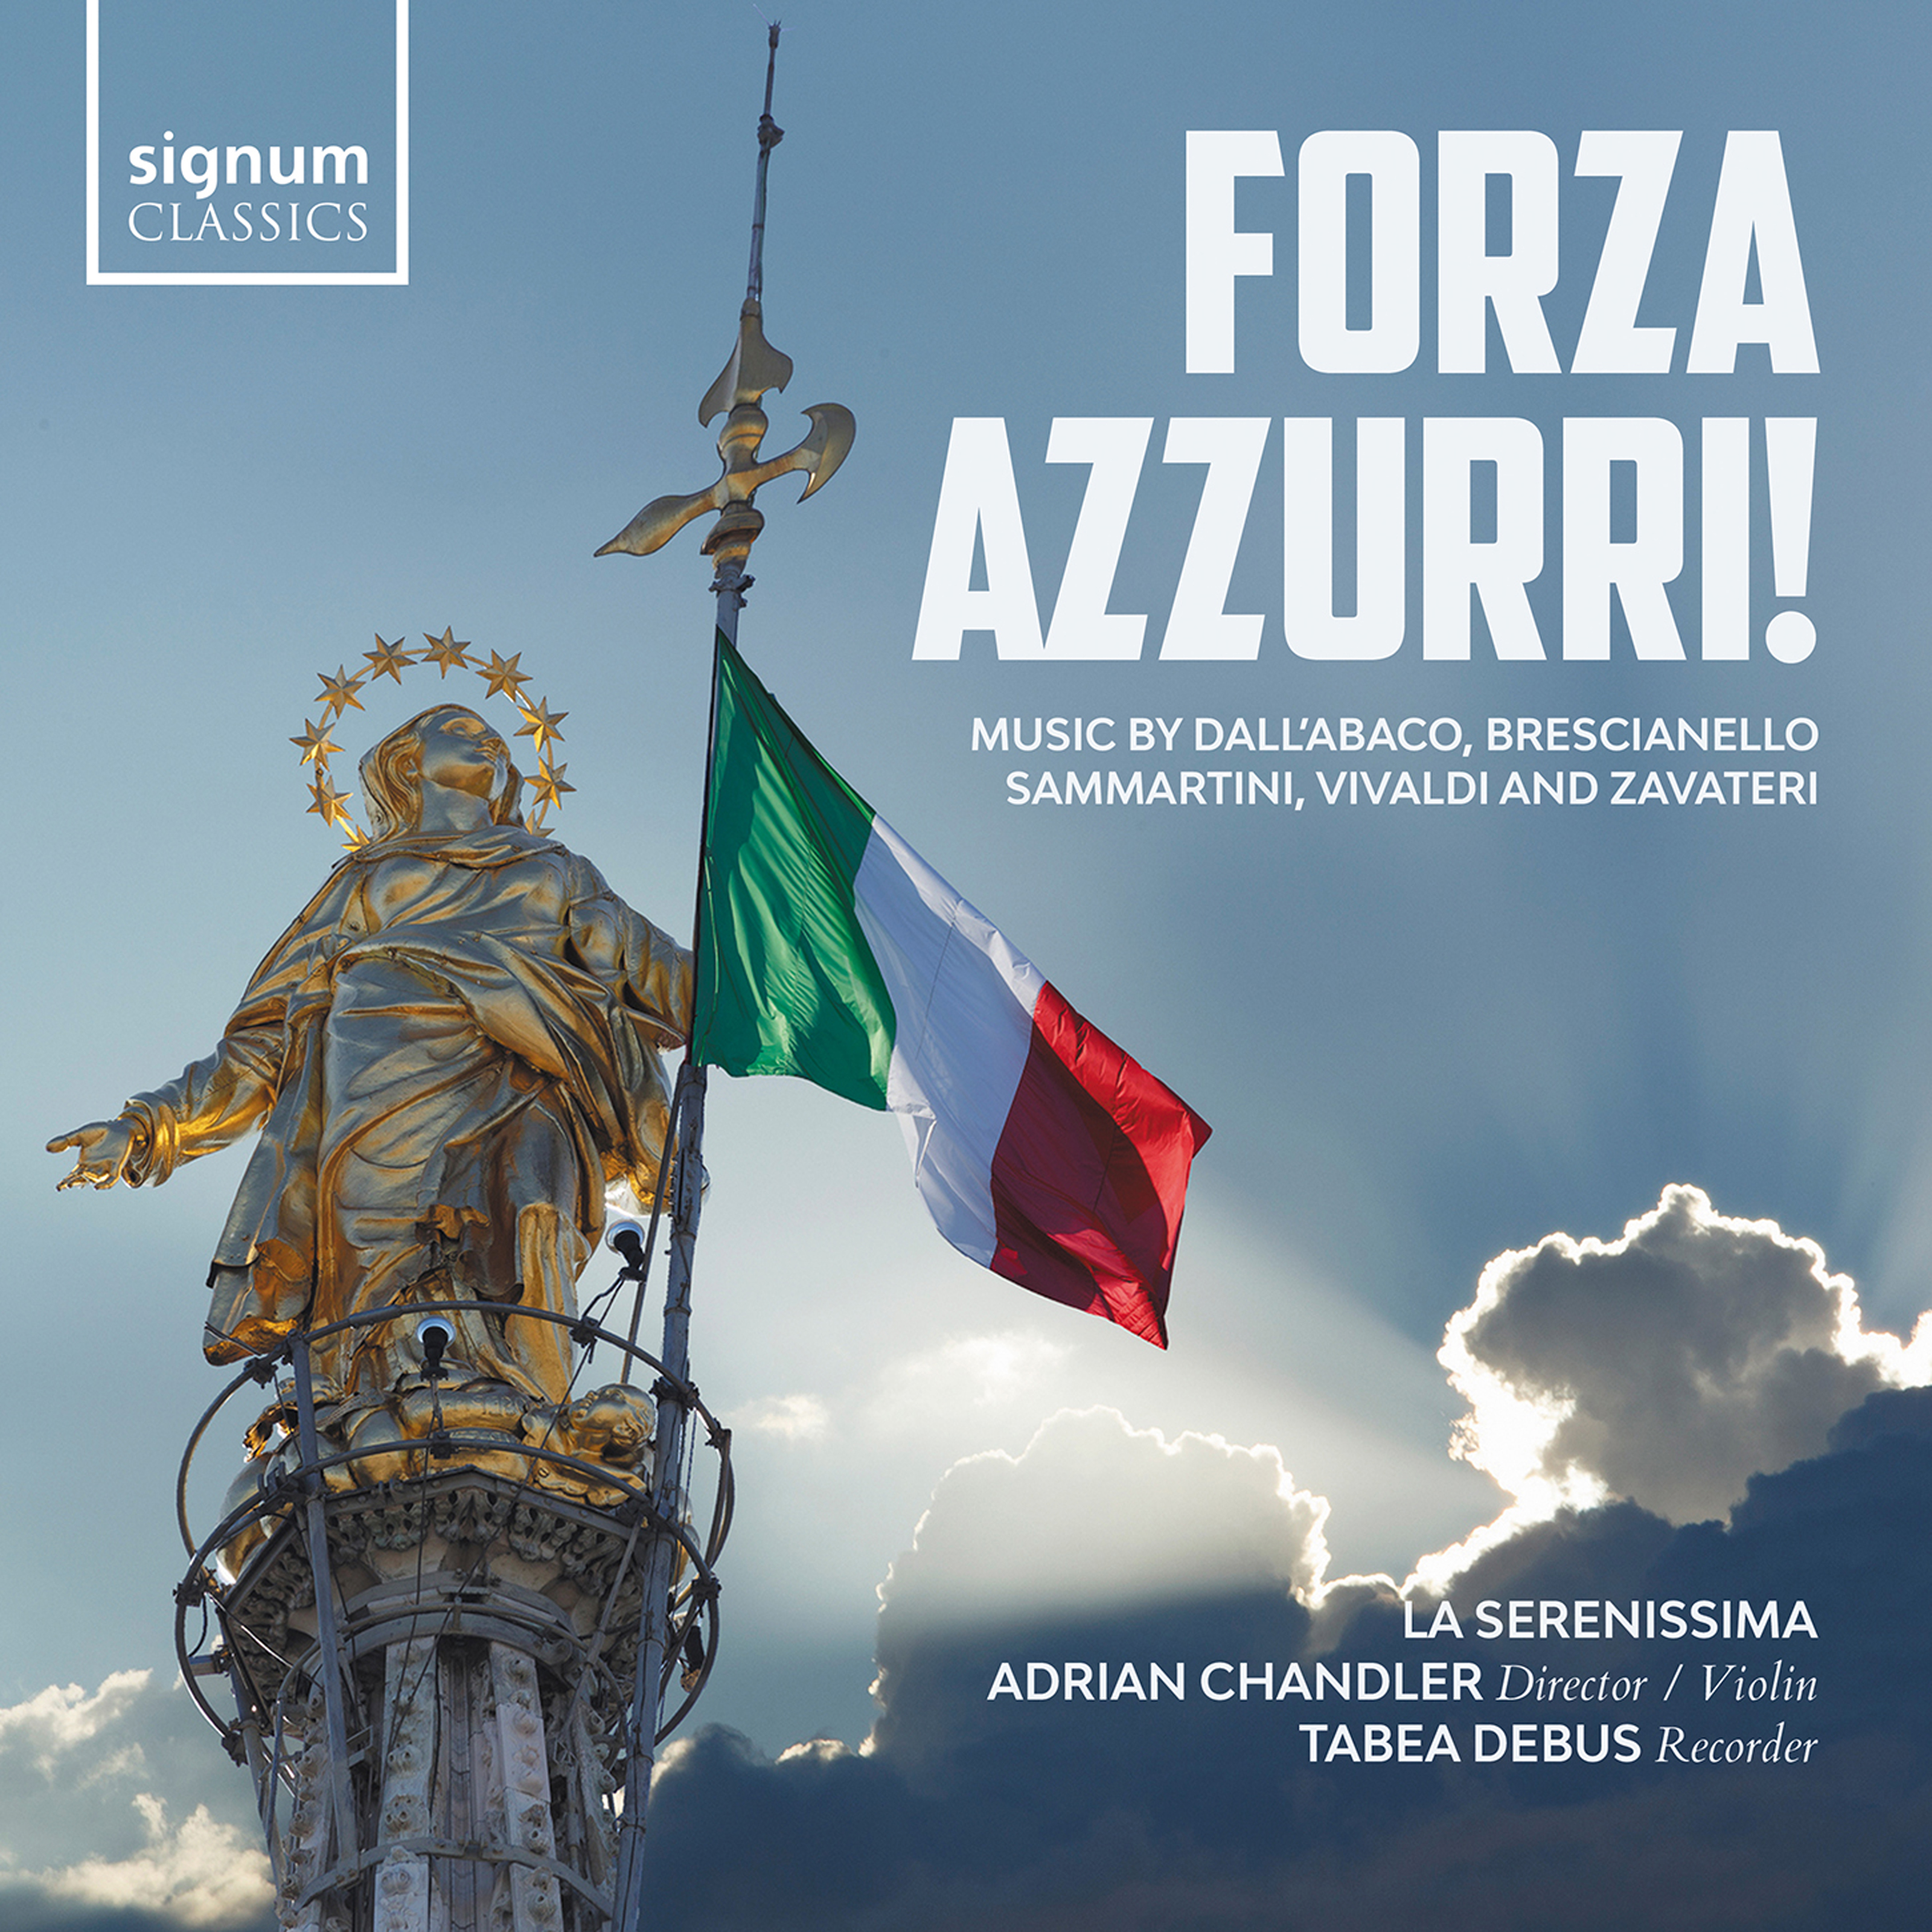 eClassical - Forza azzurri! Dall'abaco, Brescianello, Sammartini, Vivaldi and Zavateri